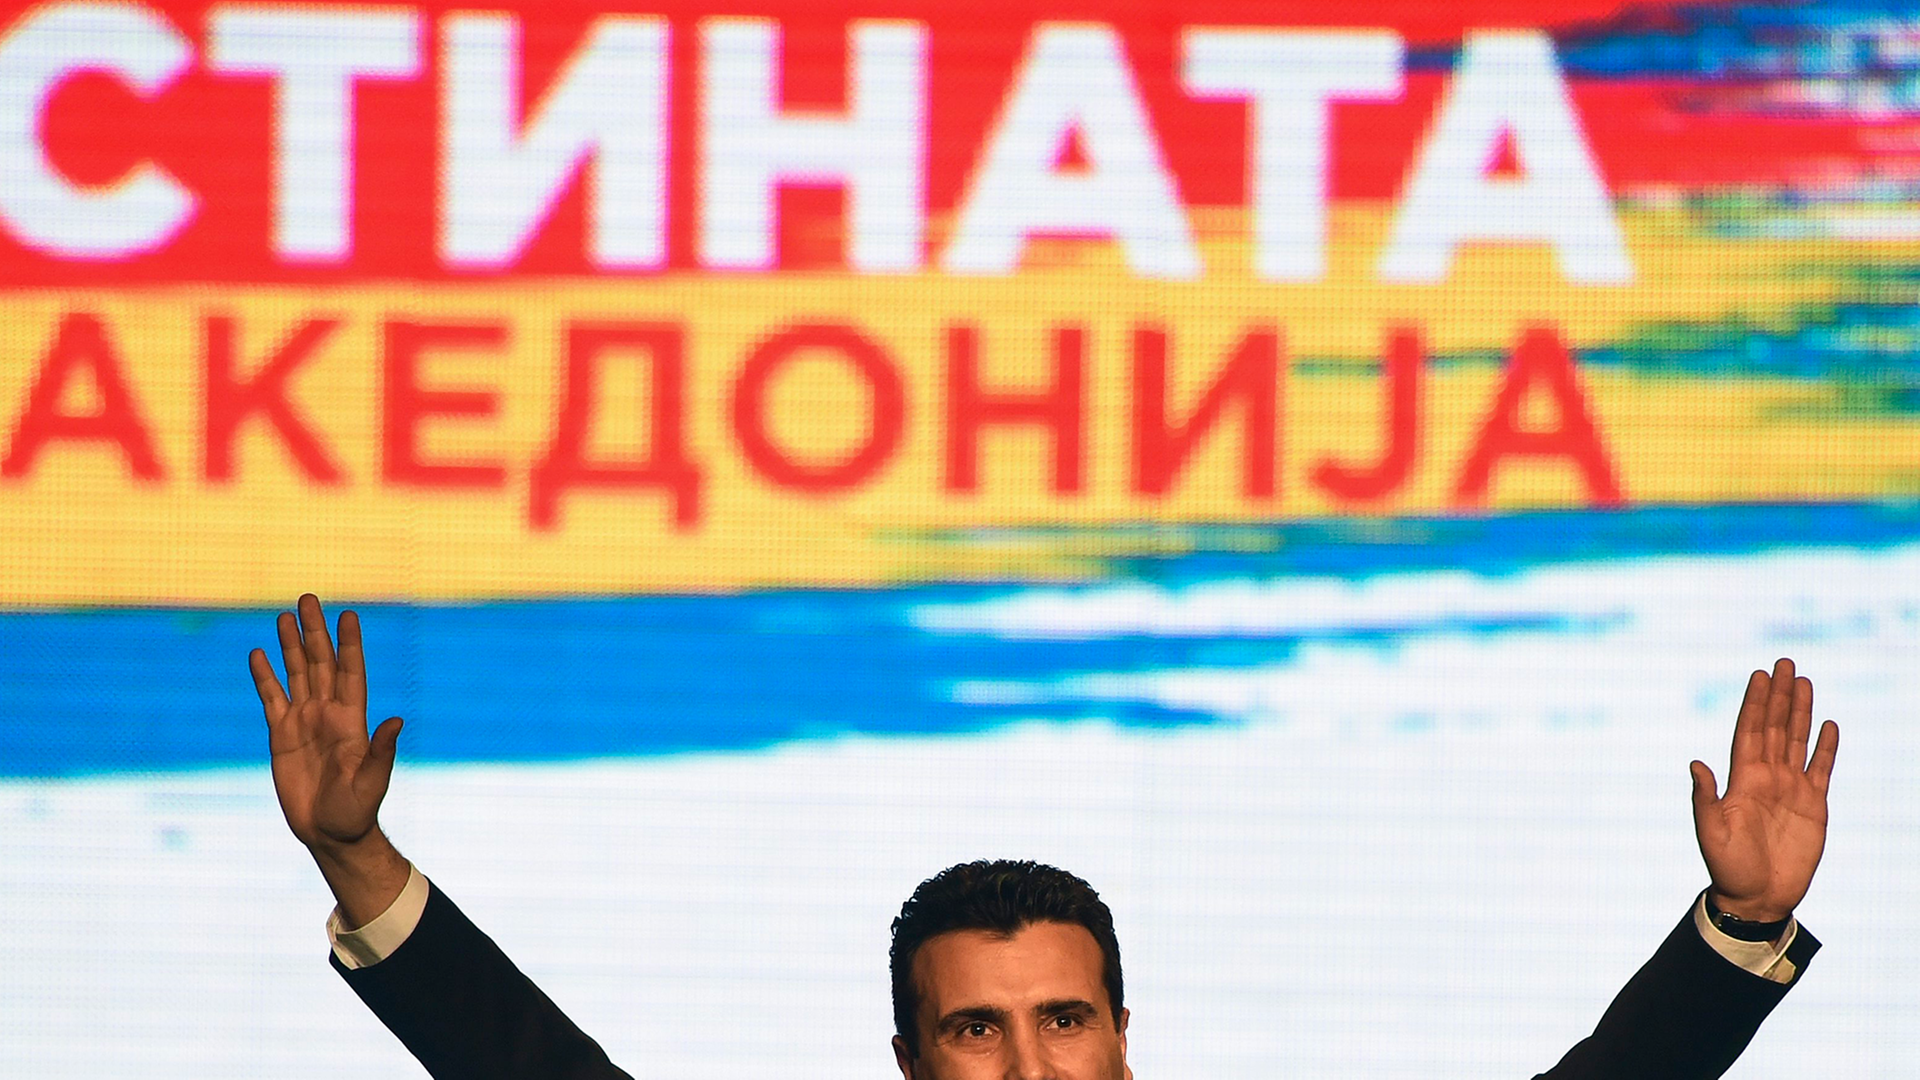 Zaef am 10. März 2015 in Skopje bei einer Rede auf einer Volksversammlung vor einem bunten Plakat. Um seine Worte zu betonen, hebt er beide Arme.